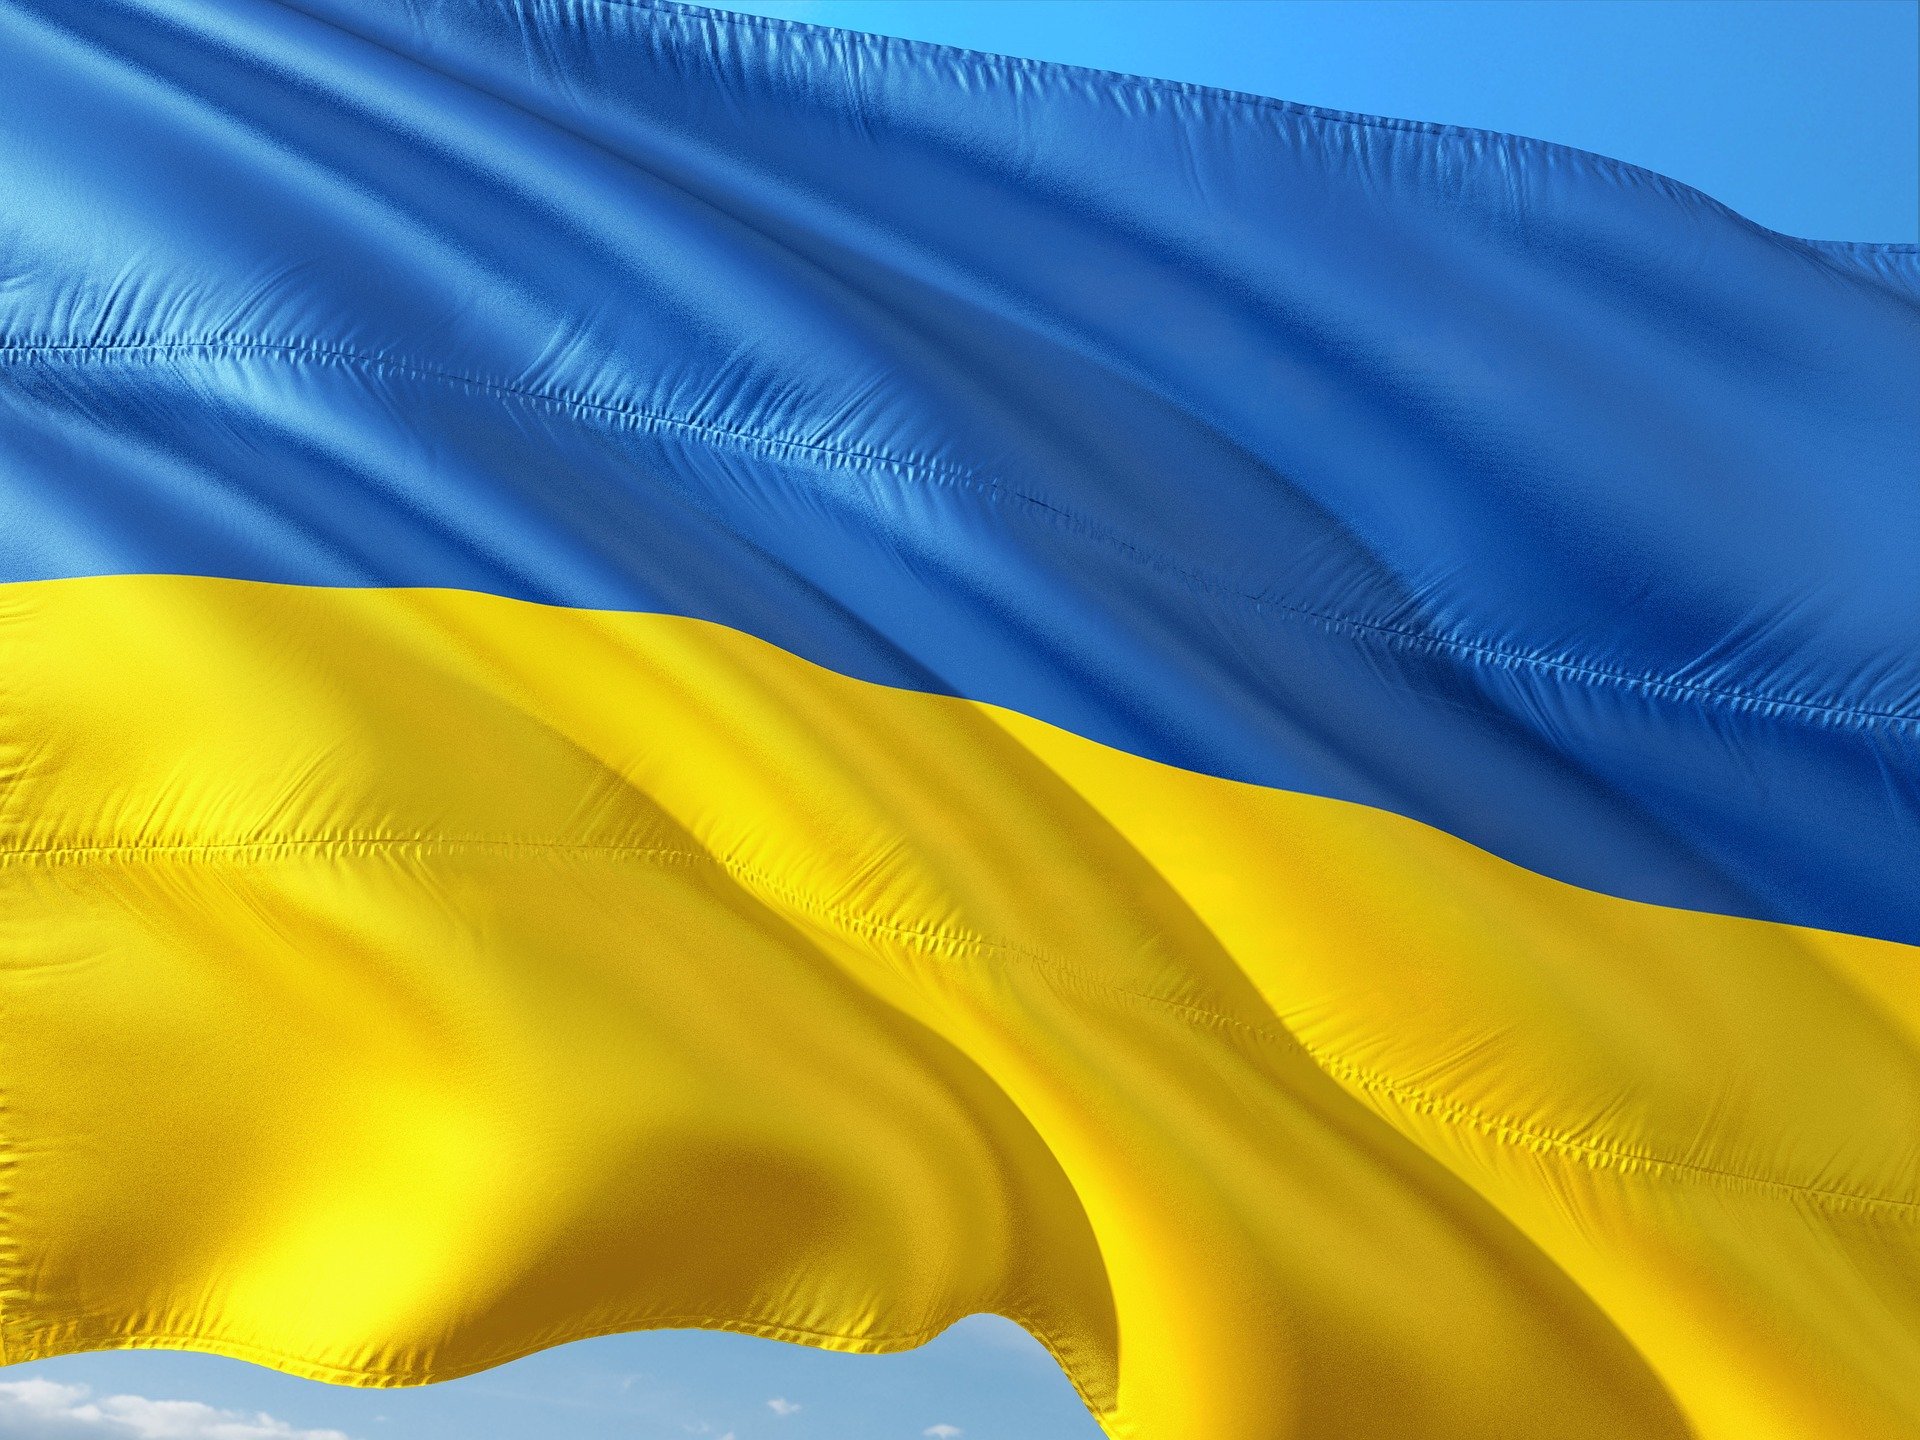 Rottame: l’Ucraina aumenta i dazi all’esportazione – Dal 2022 saranno più che triplicati, passando da 58 a 180 euro la tonnellata